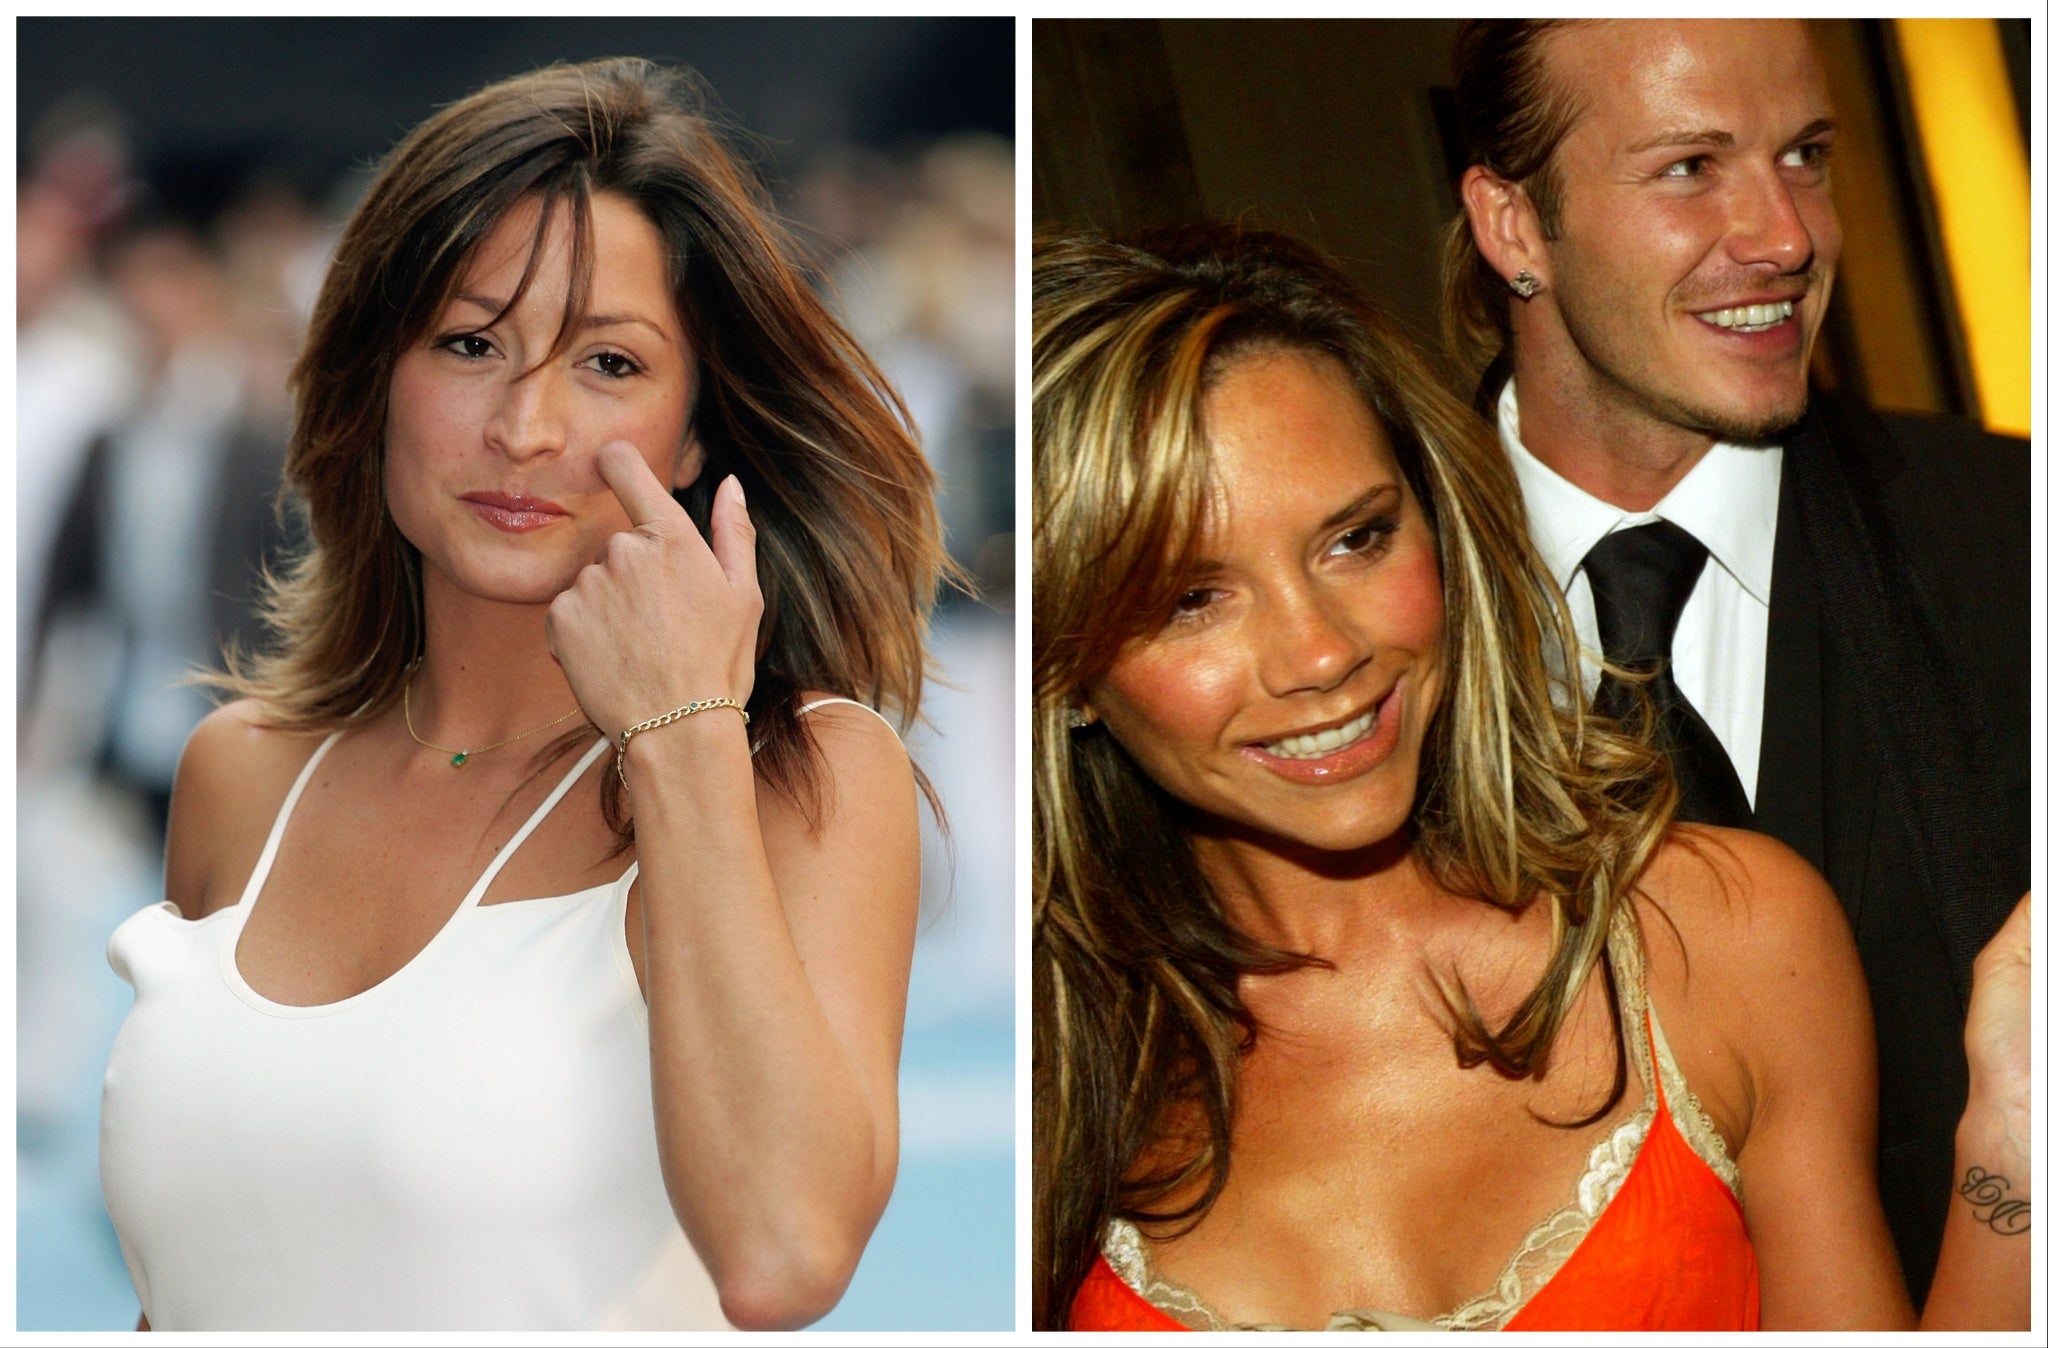 A la izquierda, Rebecca Loos en 2005. A la derecha, Victoria y David Beckham en 2004, el año en que estalló el escándalo del supuesto “amorío”.